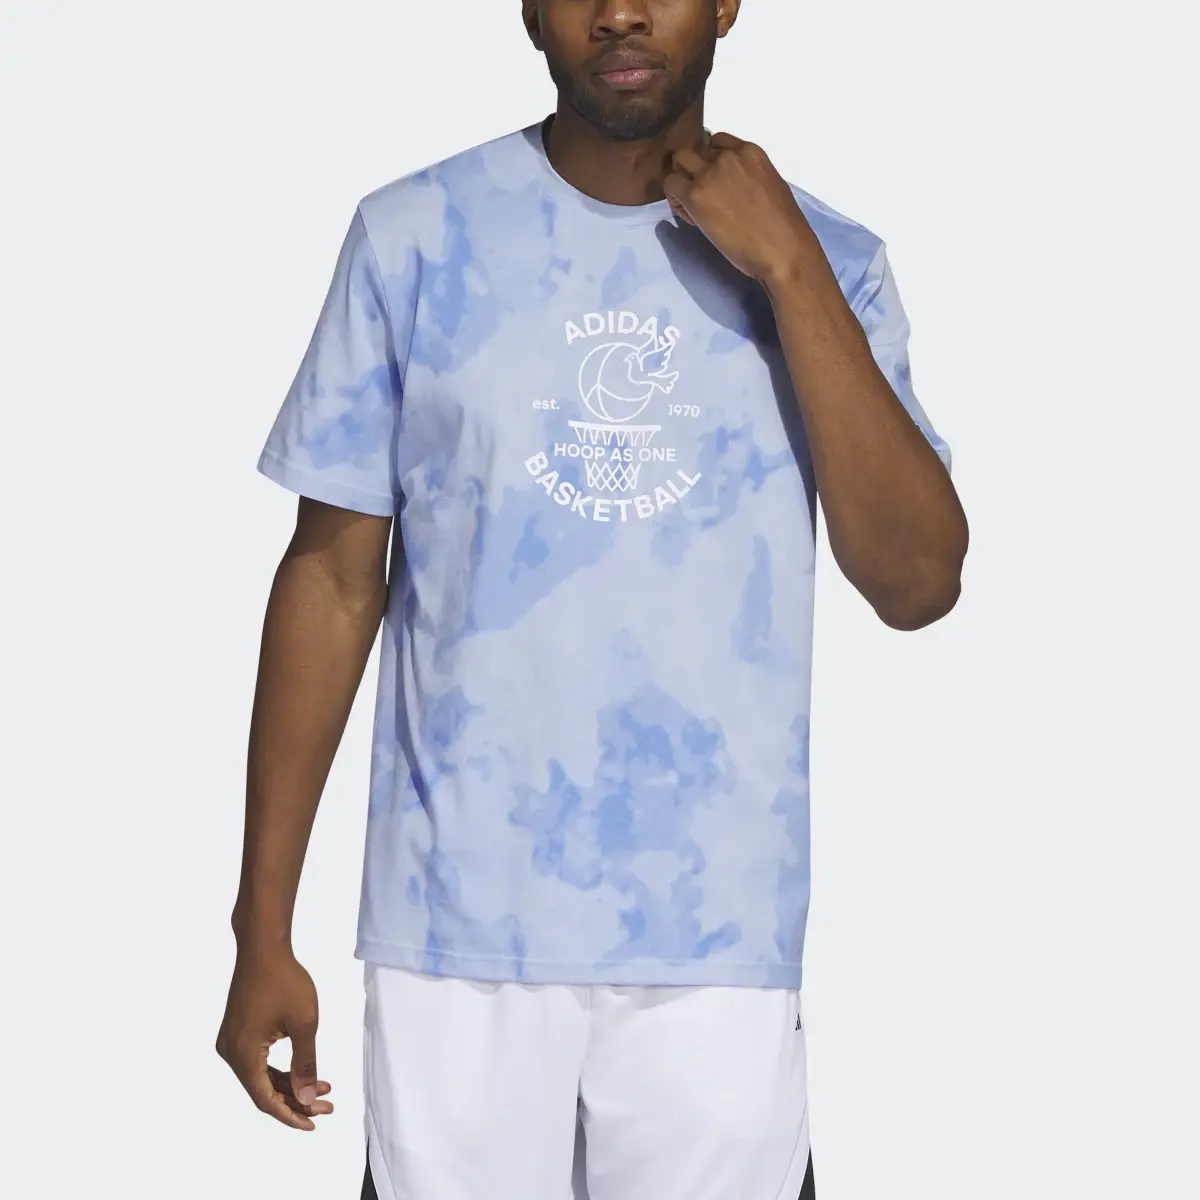 Adidas Camiseta Worldwide Hoops Basketball Graphic. 1